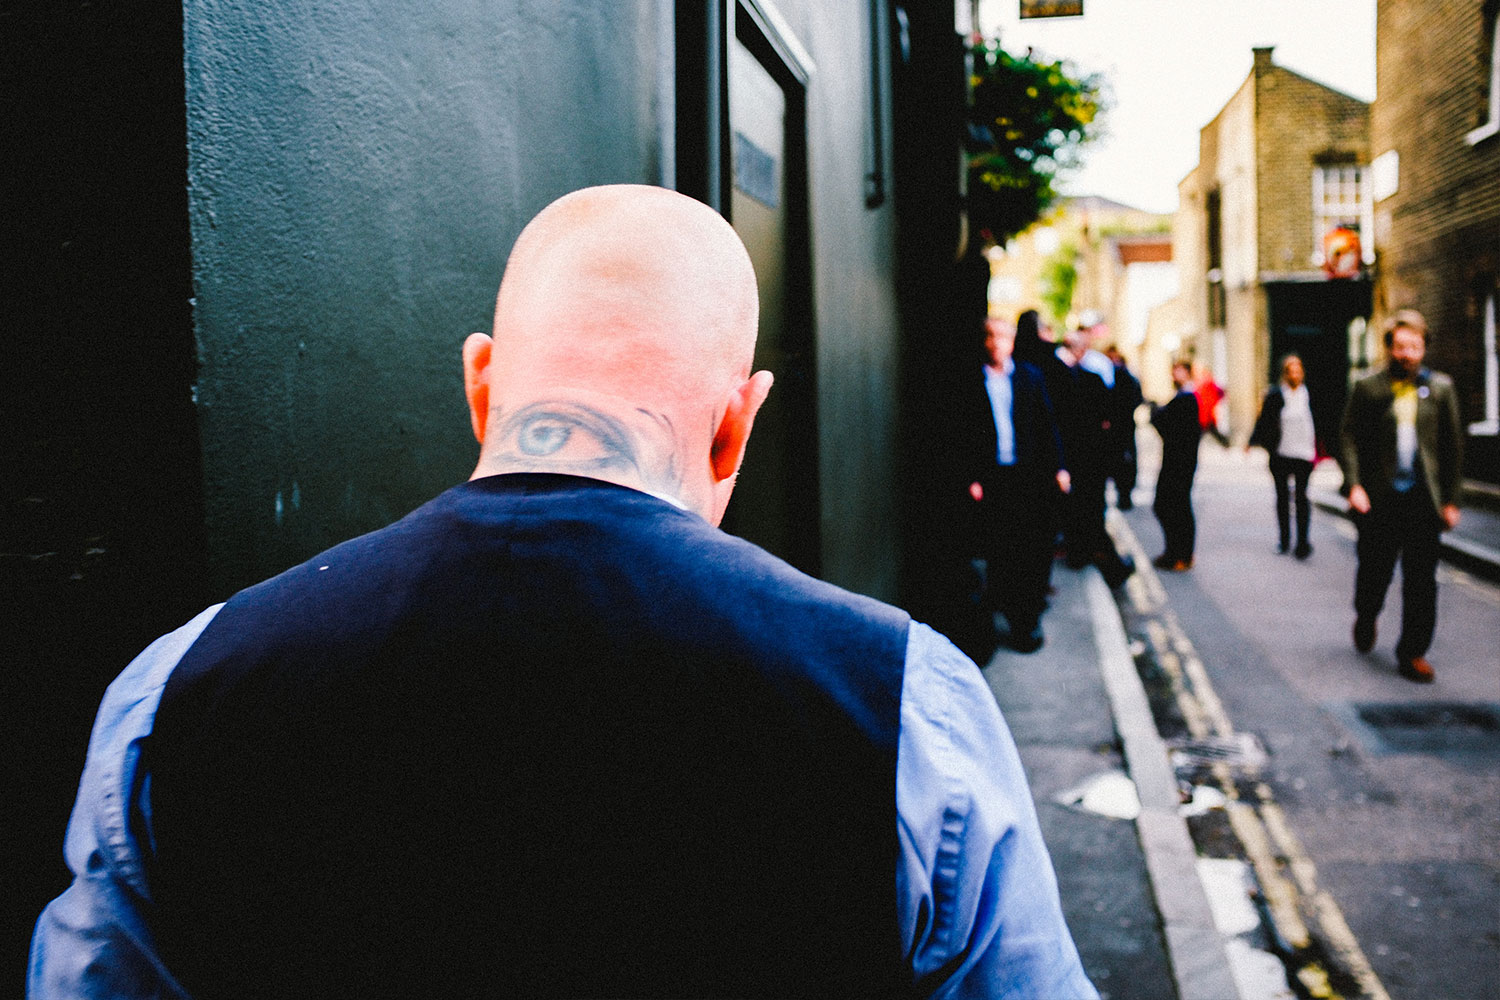 bald man wearing blue suit walking on sidewalk